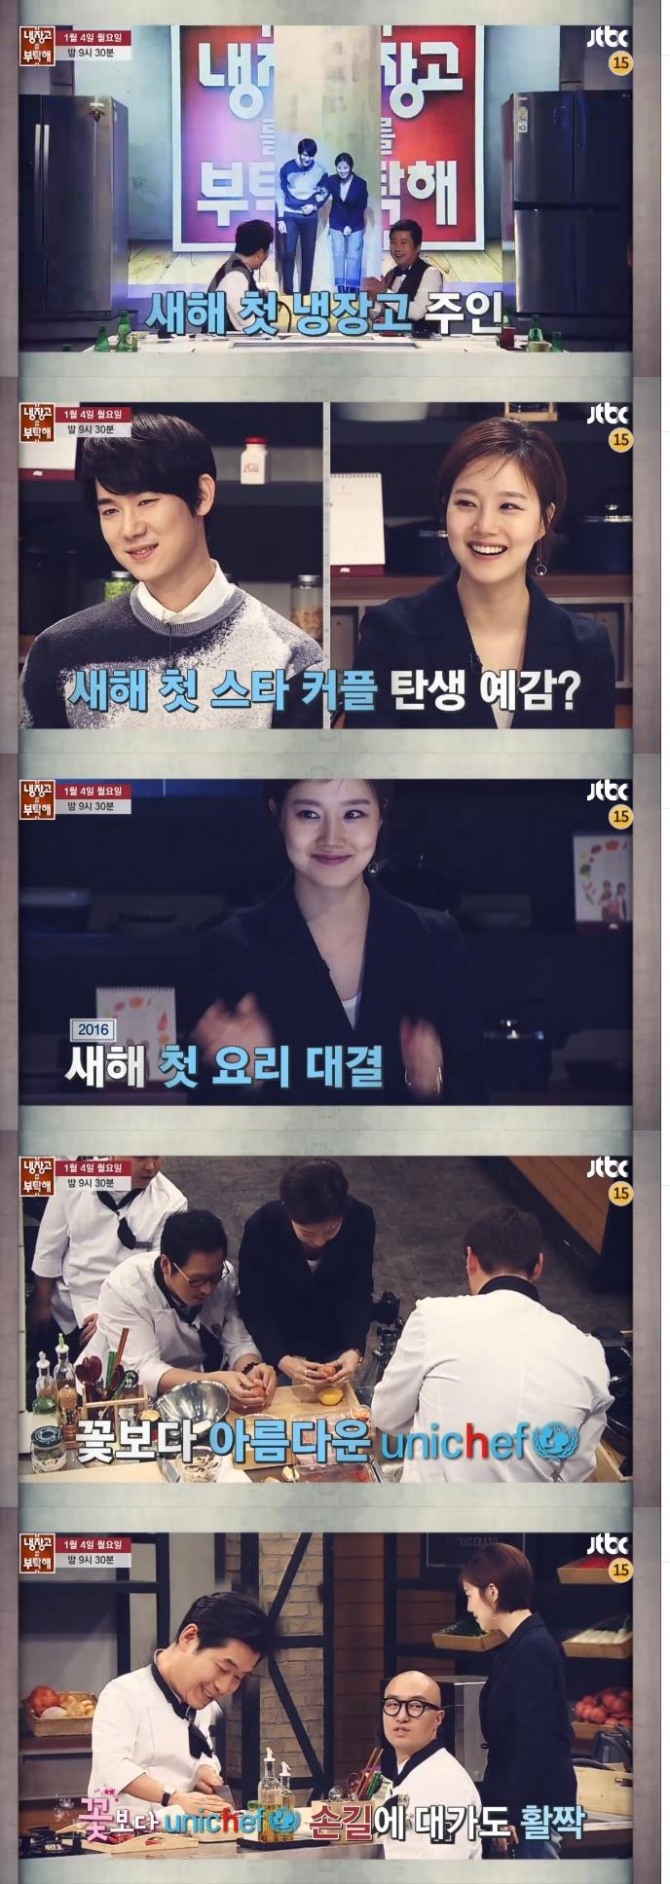 4일 밤 방송되는 JTBC '냉장고를 부탁해'에는 영화 '그날의 분위기'에서 함께 호흡을 맞춘 배우 문채원과 유연석이 게스트로 출연한다./사진=JTBC 예고 방송 캡처